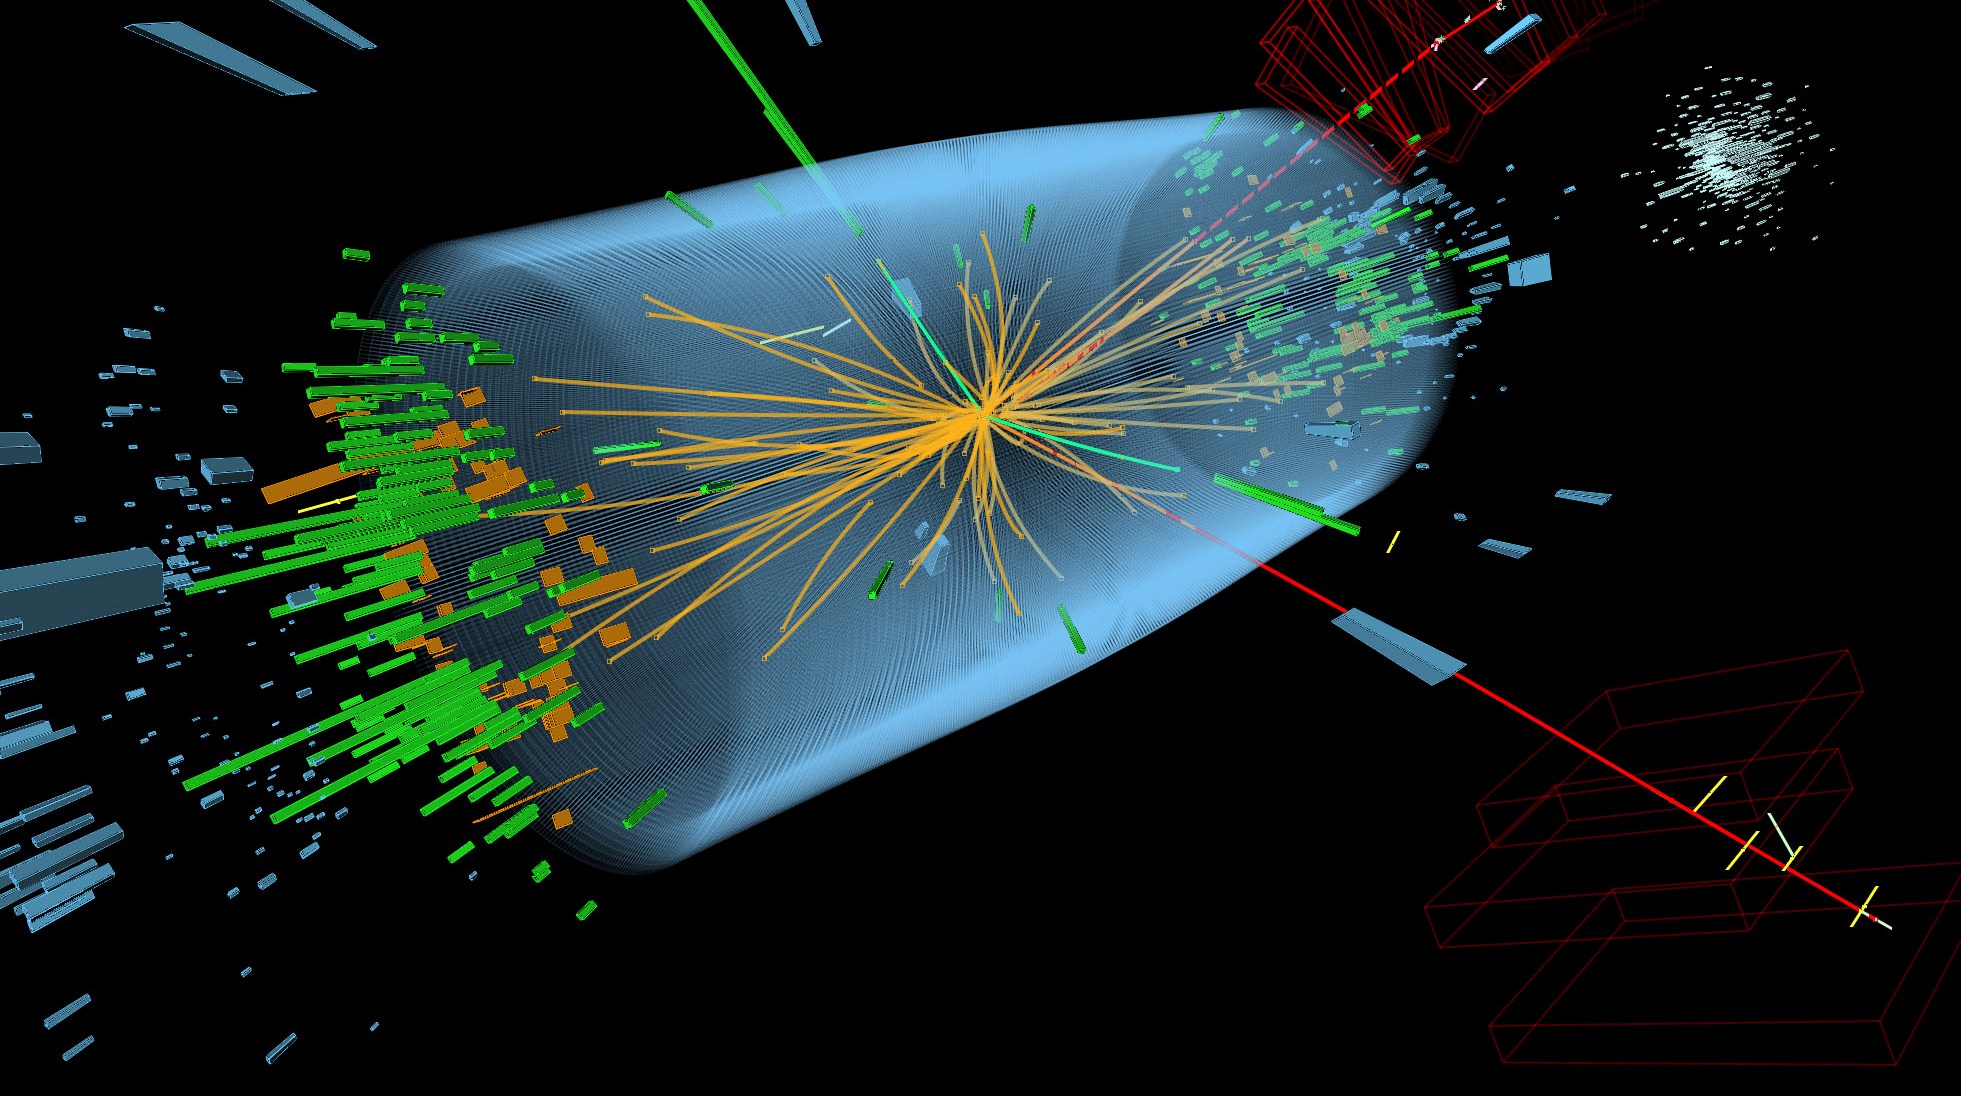 Το CERN ανακοίνωσε τον εντοπισμό δύο νέων υποατομικών σωματιδίων